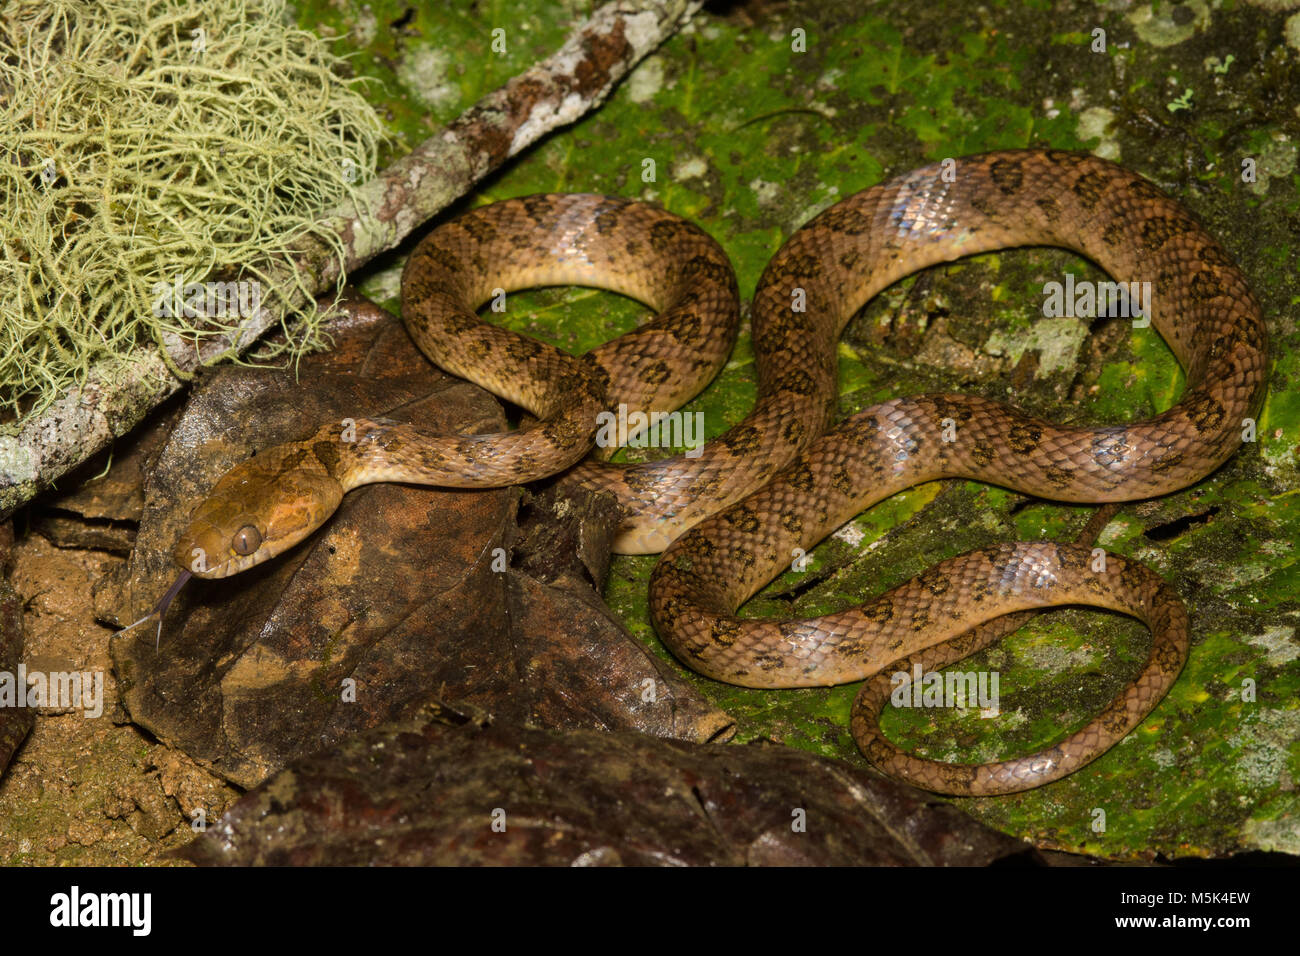 Eine cat-eyed snake (Leptodeira septentrionalis) aus dem südlichen Ecuador. Stockfoto